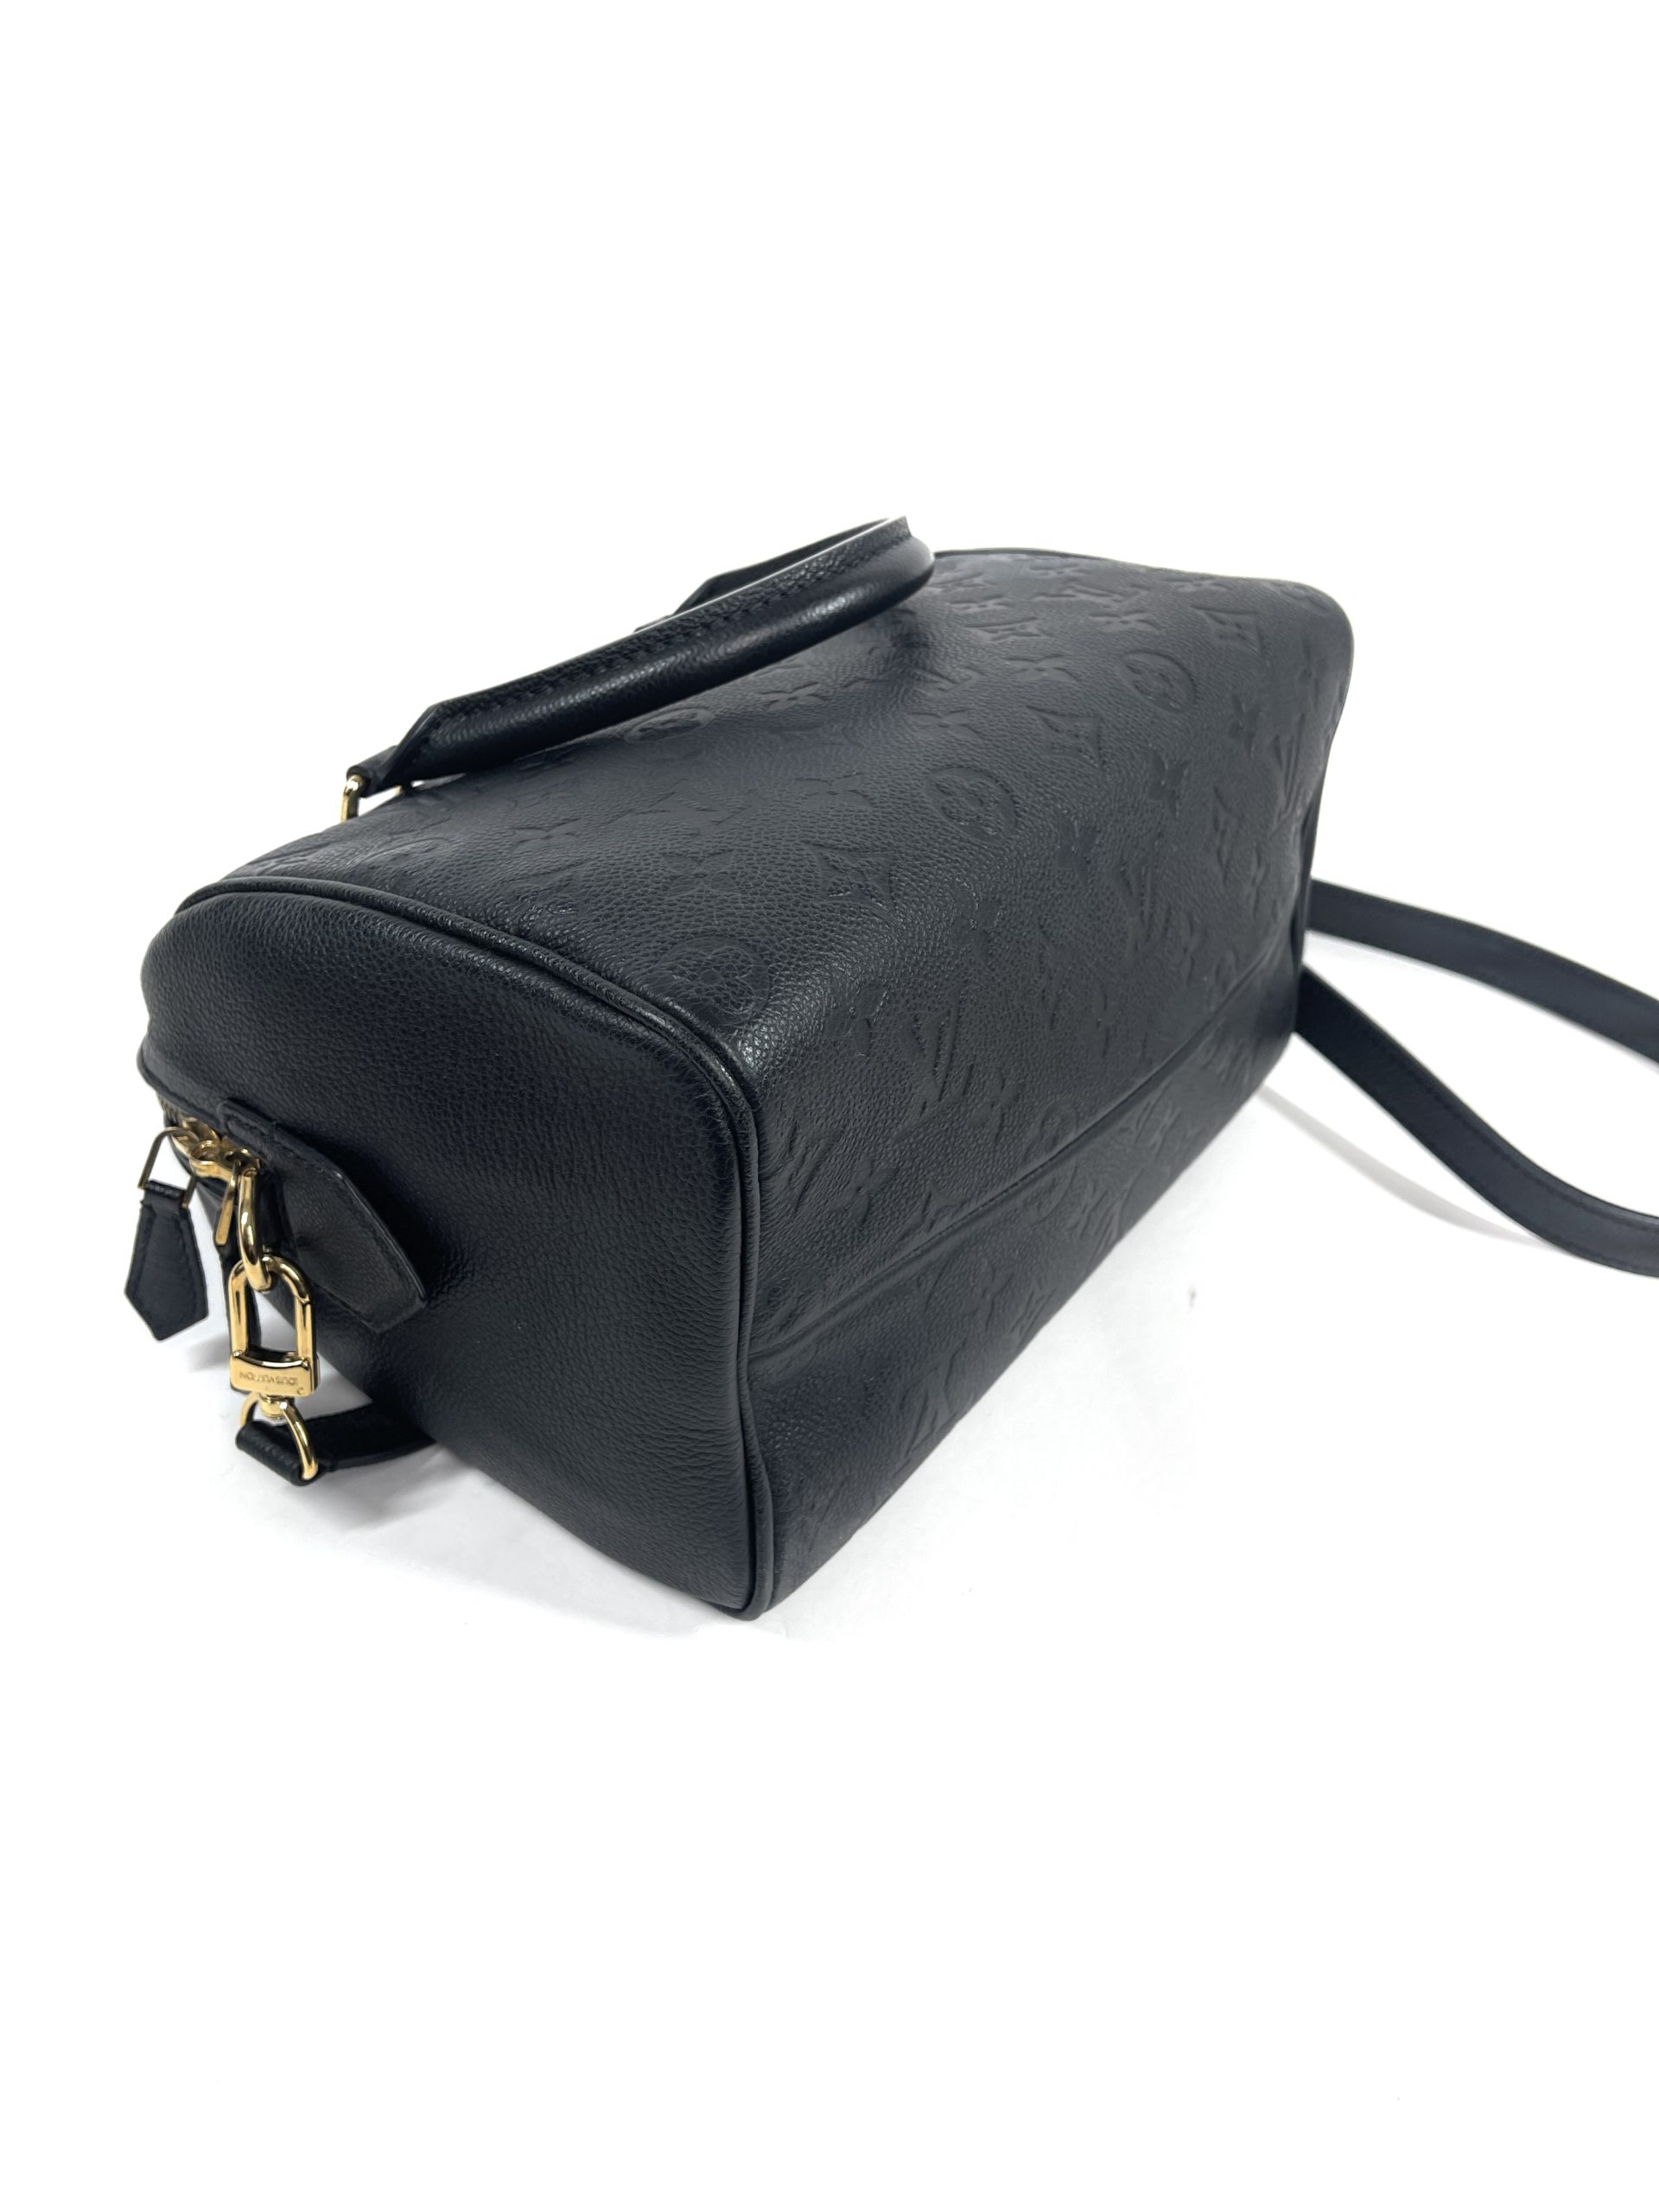 Louis Vuitton Speedy Bandouliere 25 Epi Leather (Noir) Review : Rose  LuxsLux 